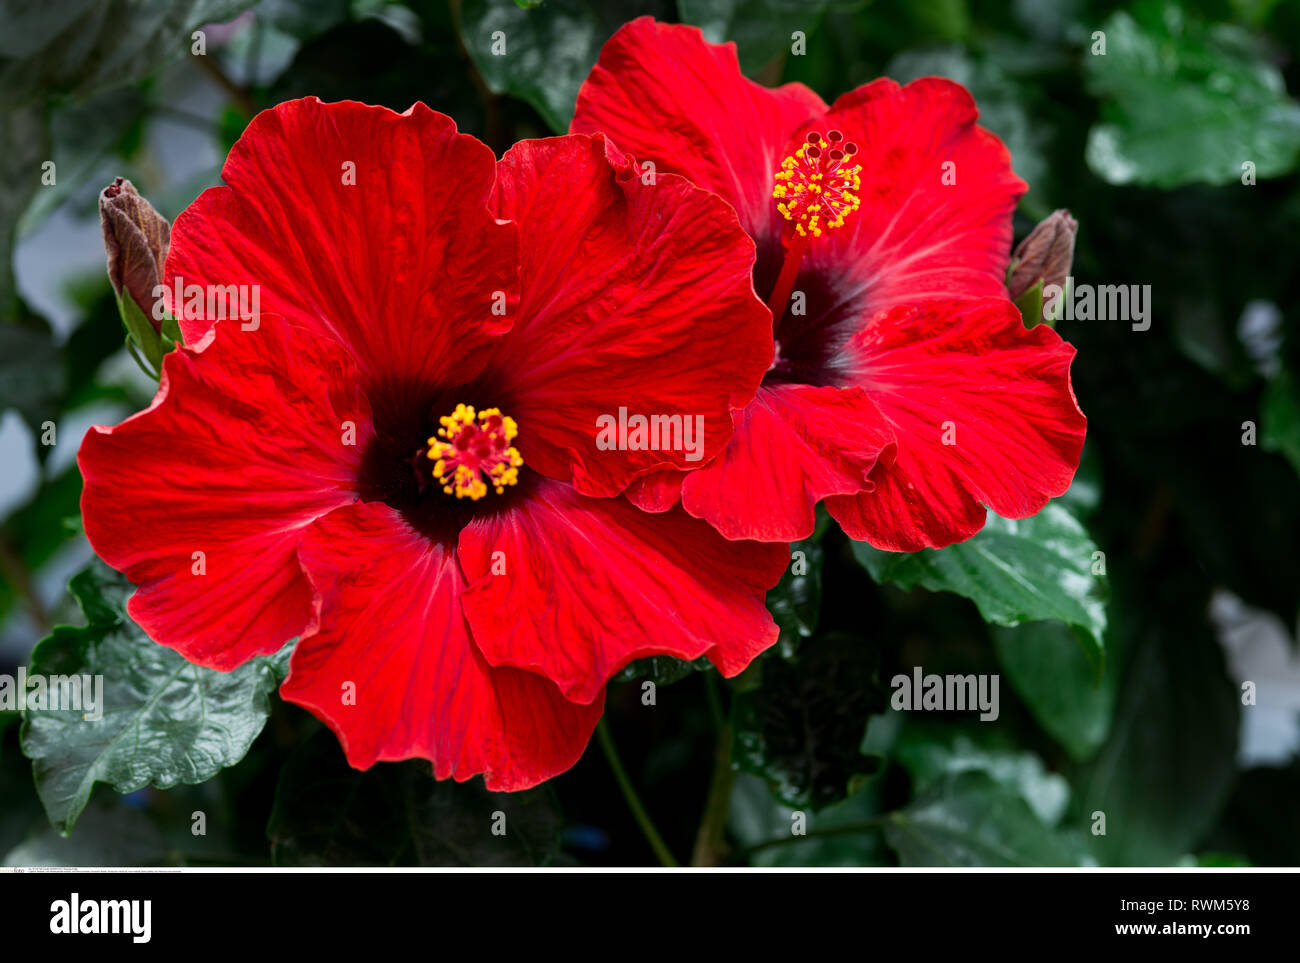 La botanica, rosso fiori di ibisco, attenzione! Per Greetingcard-Use / Postcard-Use nei Paesi di lingua tedesca talune restrizioni possono applicare Foto Stock